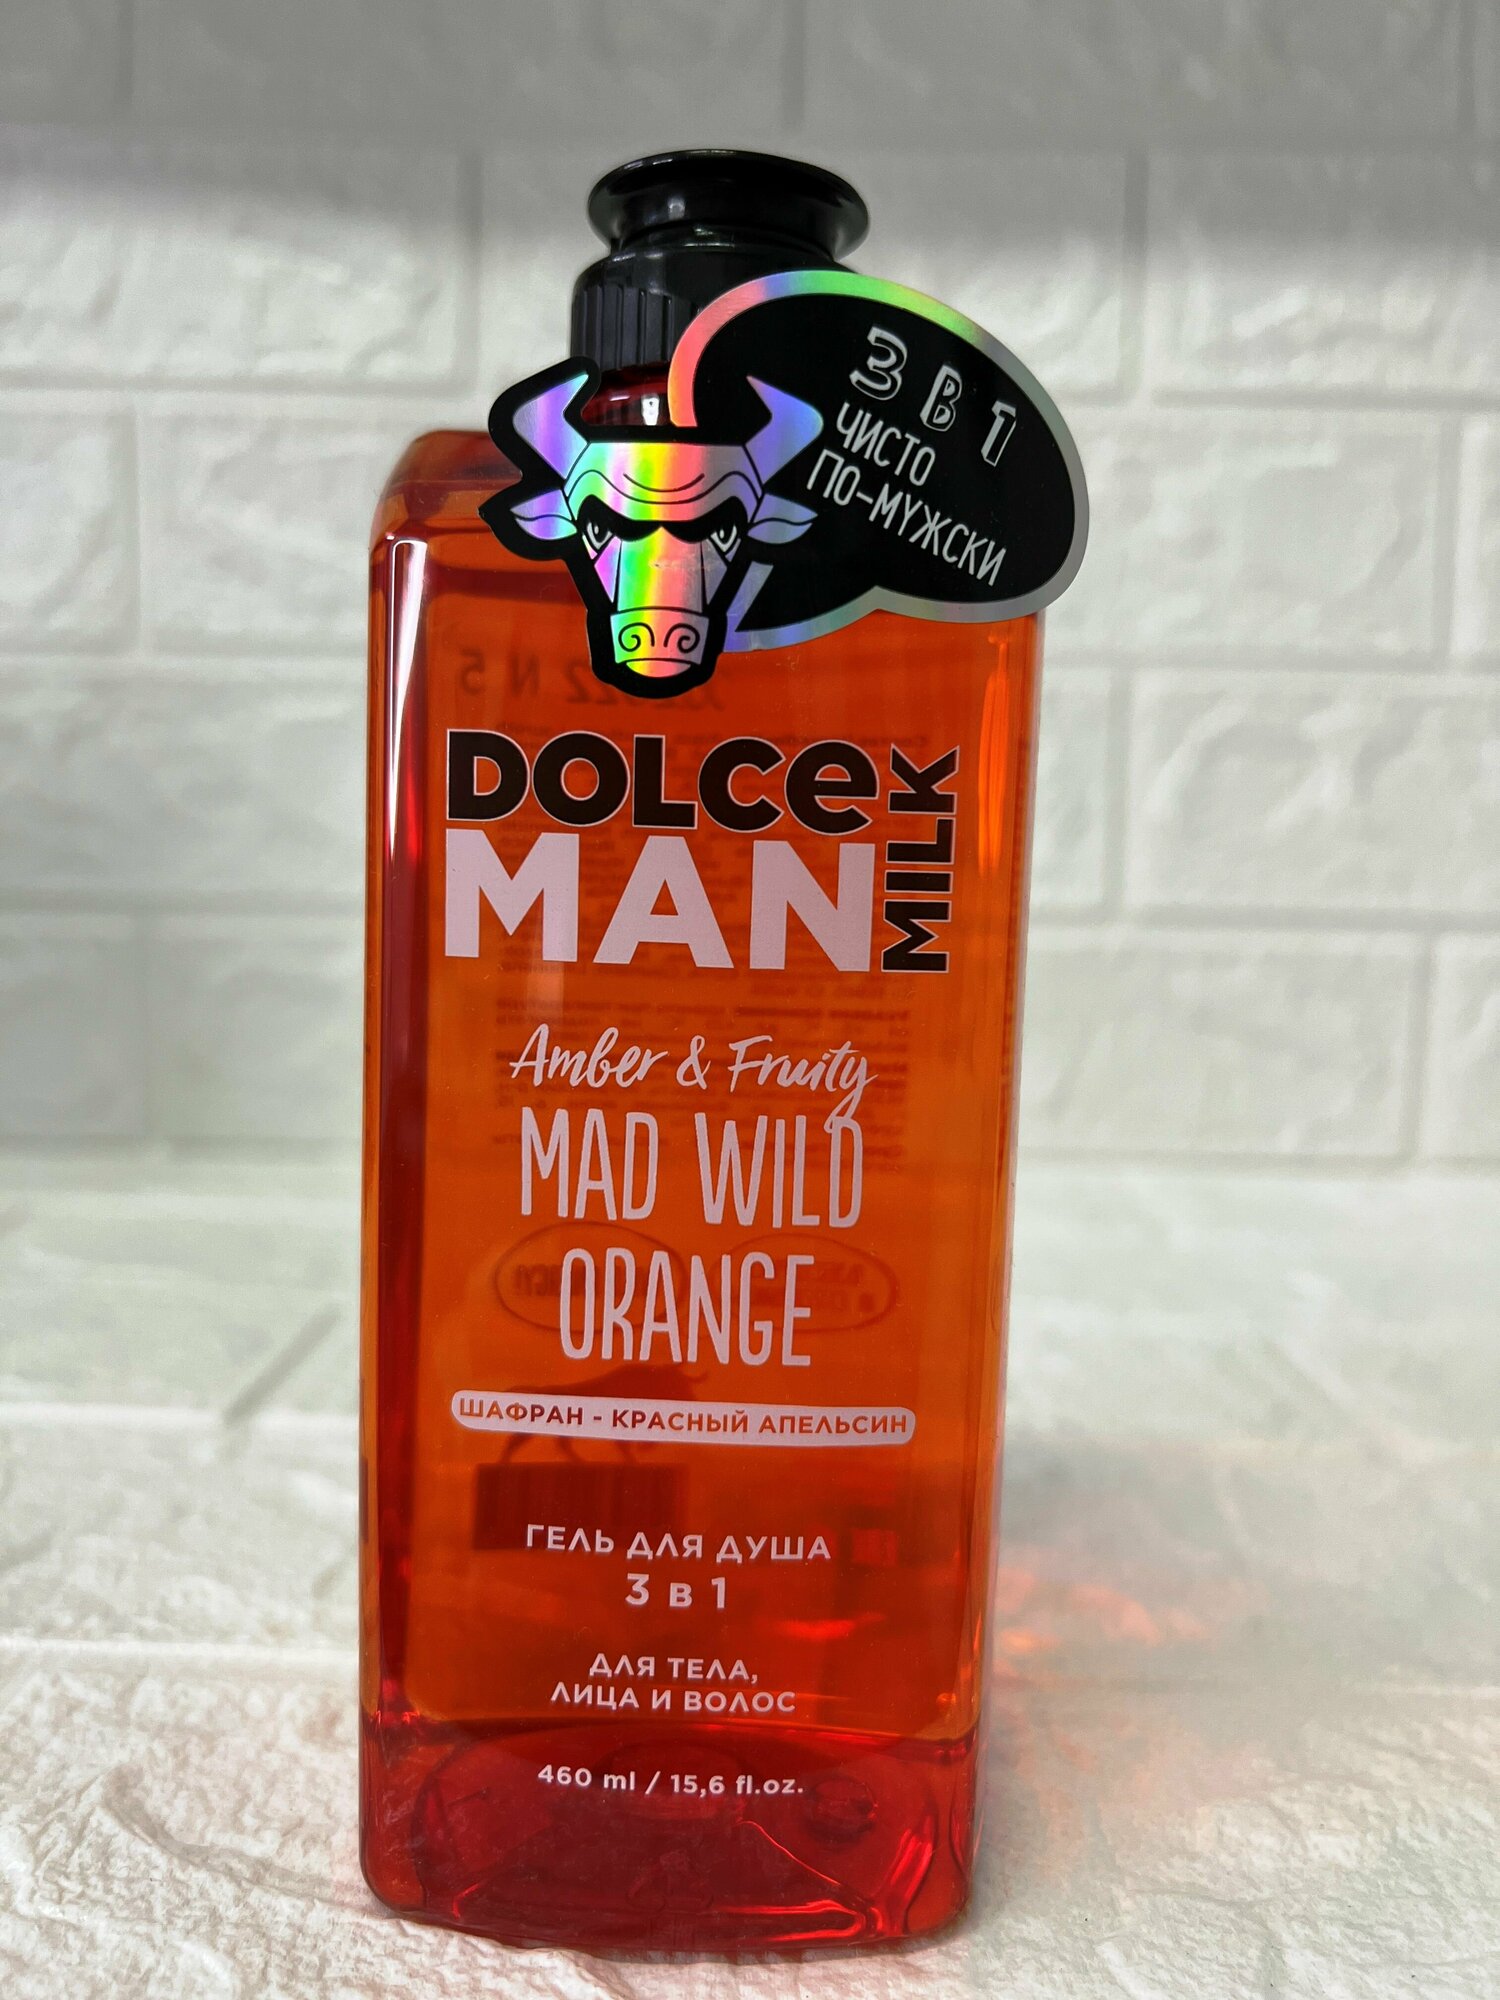 Dolce MILK Man гель для душа 3 в 1. Шафран-красный апельсин